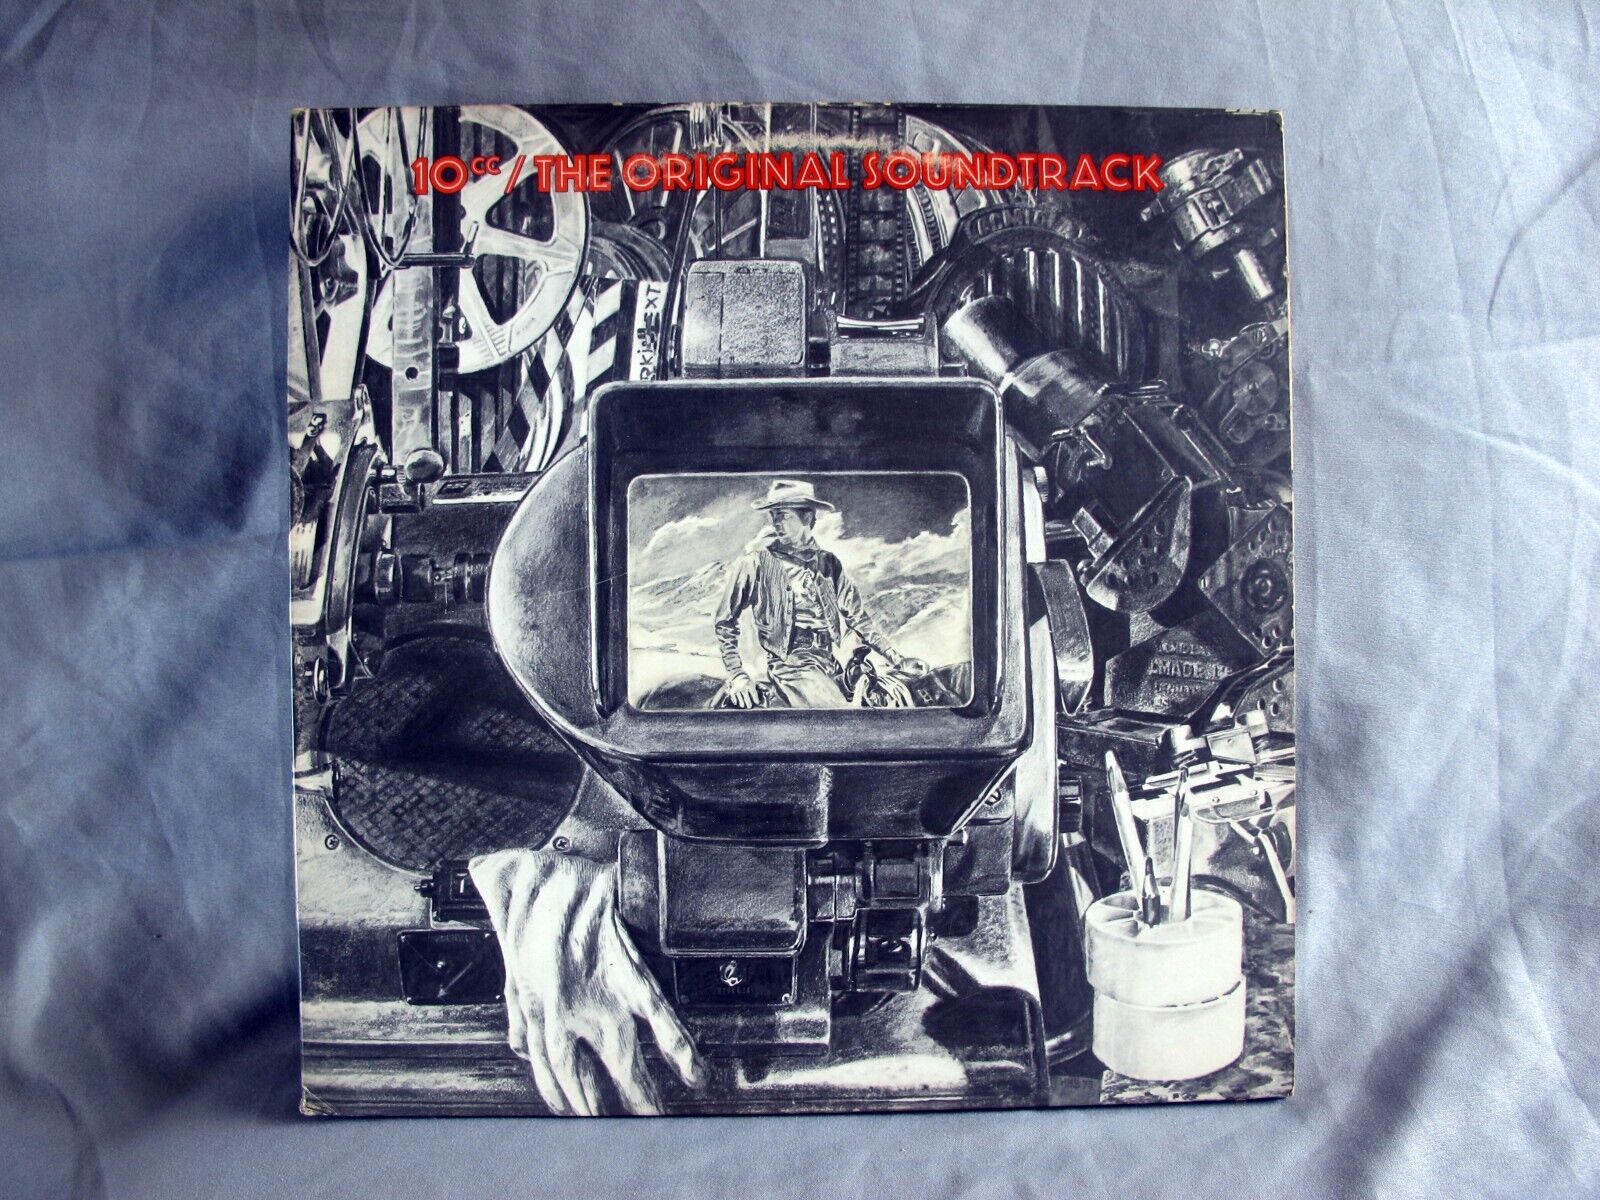 10cc : The Original Soundtrack 1975 Rock LP Vinyl Record SRM-1-1029 (Grade VG)